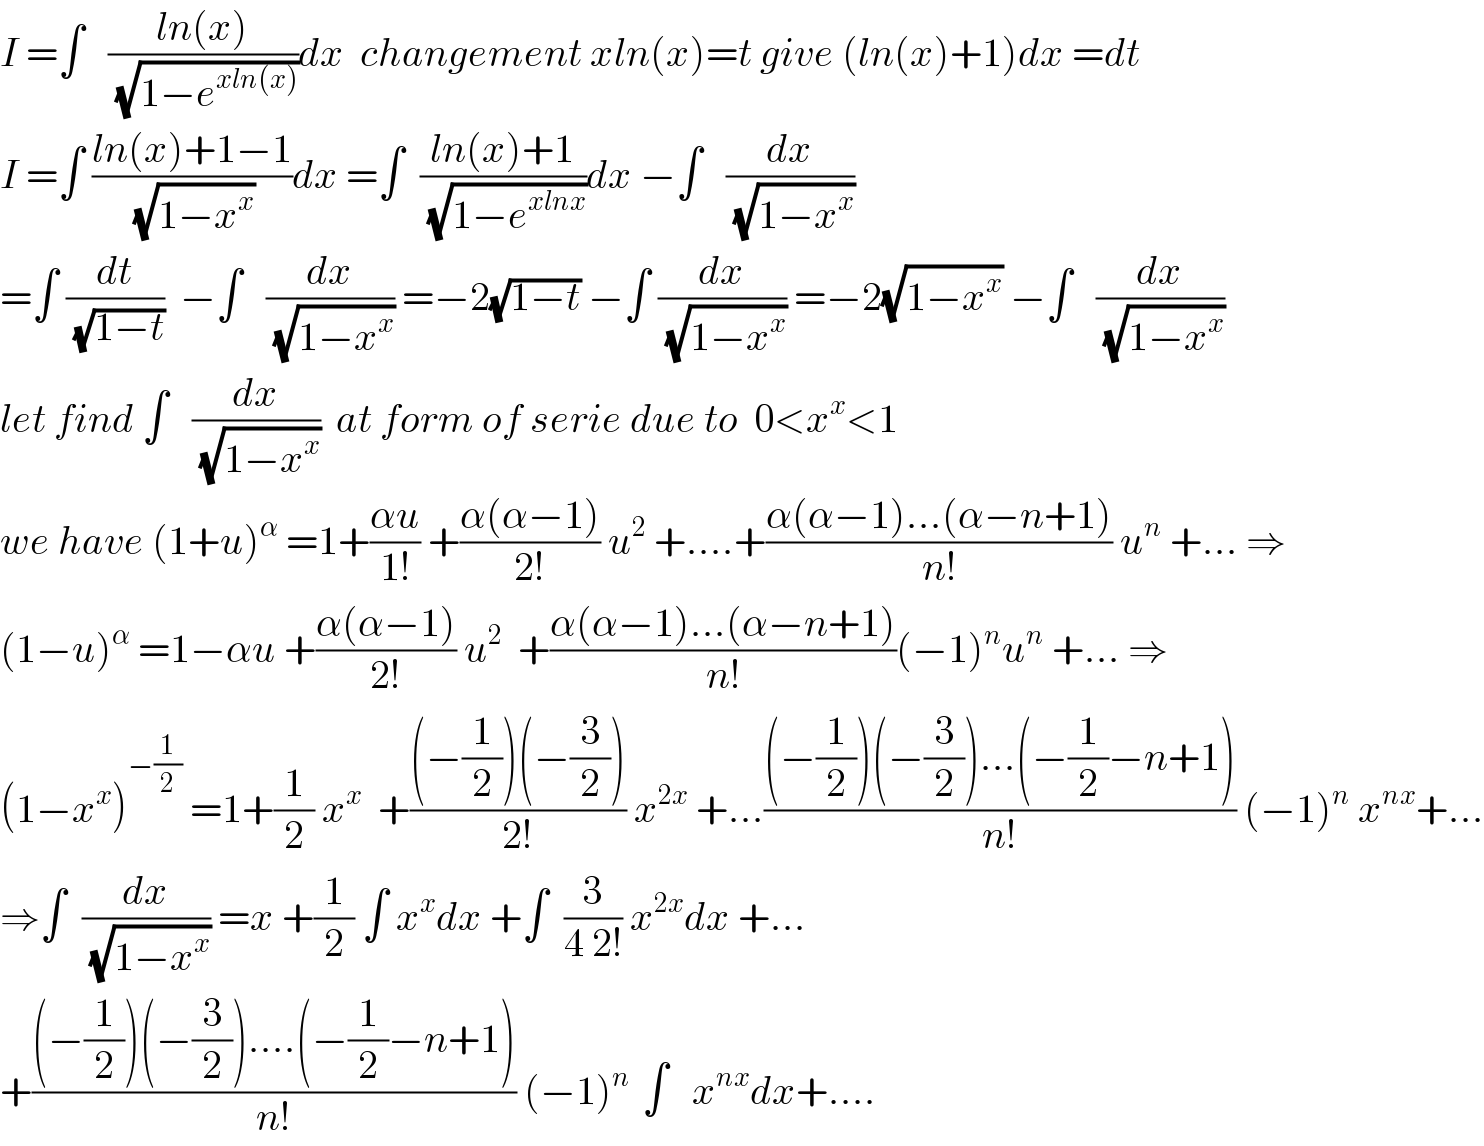 I =∫   ((ln(x))/(√(1−e^(xln(x)) )))dx  changement xln(x)=t give (ln(x)+1)dx =dt  I =∫ ((ln(x)+1−1)/(√(1−x^x )))dx =∫  ((ln(x)+1)/(√(1−e^(xlnx) )))dx −∫   (dx/(√(1−x^x )))  =∫ (dt/(√(1−t)))  −∫   (dx/(√(1−x^x ))) =−2(√(1−t)) −∫ (dx/(√(1−x^x ))) =−2(√(1−x^x )) −∫   (dx/(√(1−x^x )))  let find ∫   (dx/(√(1−x^x )))  at form of serie due to  0<x^x <1  we have (1+u)^α  =1+((αu)/(1!)) +((α(α−1))/(2!)) u^2  +....+((α(α−1)...(α−n+1))/(n!)) u^n  +... ⇒  (1−u)^α  =1−αu +((α(α−1))/(2!)) u^2   +((α(α−1)...(α−n+1))/(n!))(−1)^n u^n  +... ⇒  (1−x^x )^(−(1/2))  =1+(1/2) x^x   +(((−(1/2))(−(3/2)))/(2!)) x^(2x)  +...(((−(1/2))(−(3/2))...(−(1/2)−n+1))/(n!)) (−1)^n  x^(nx) +...  ⇒∫  (dx/(√(1−x^x ))) =x +(1/2) ∫ x^x dx +∫  (3/(4 2!)) x^(2x) dx +...  +(((−(1/2))(−(3/2))....(−(1/2)−n+1))/(n!)) (−1)^(n )  ∫   x^(nx) dx+....  